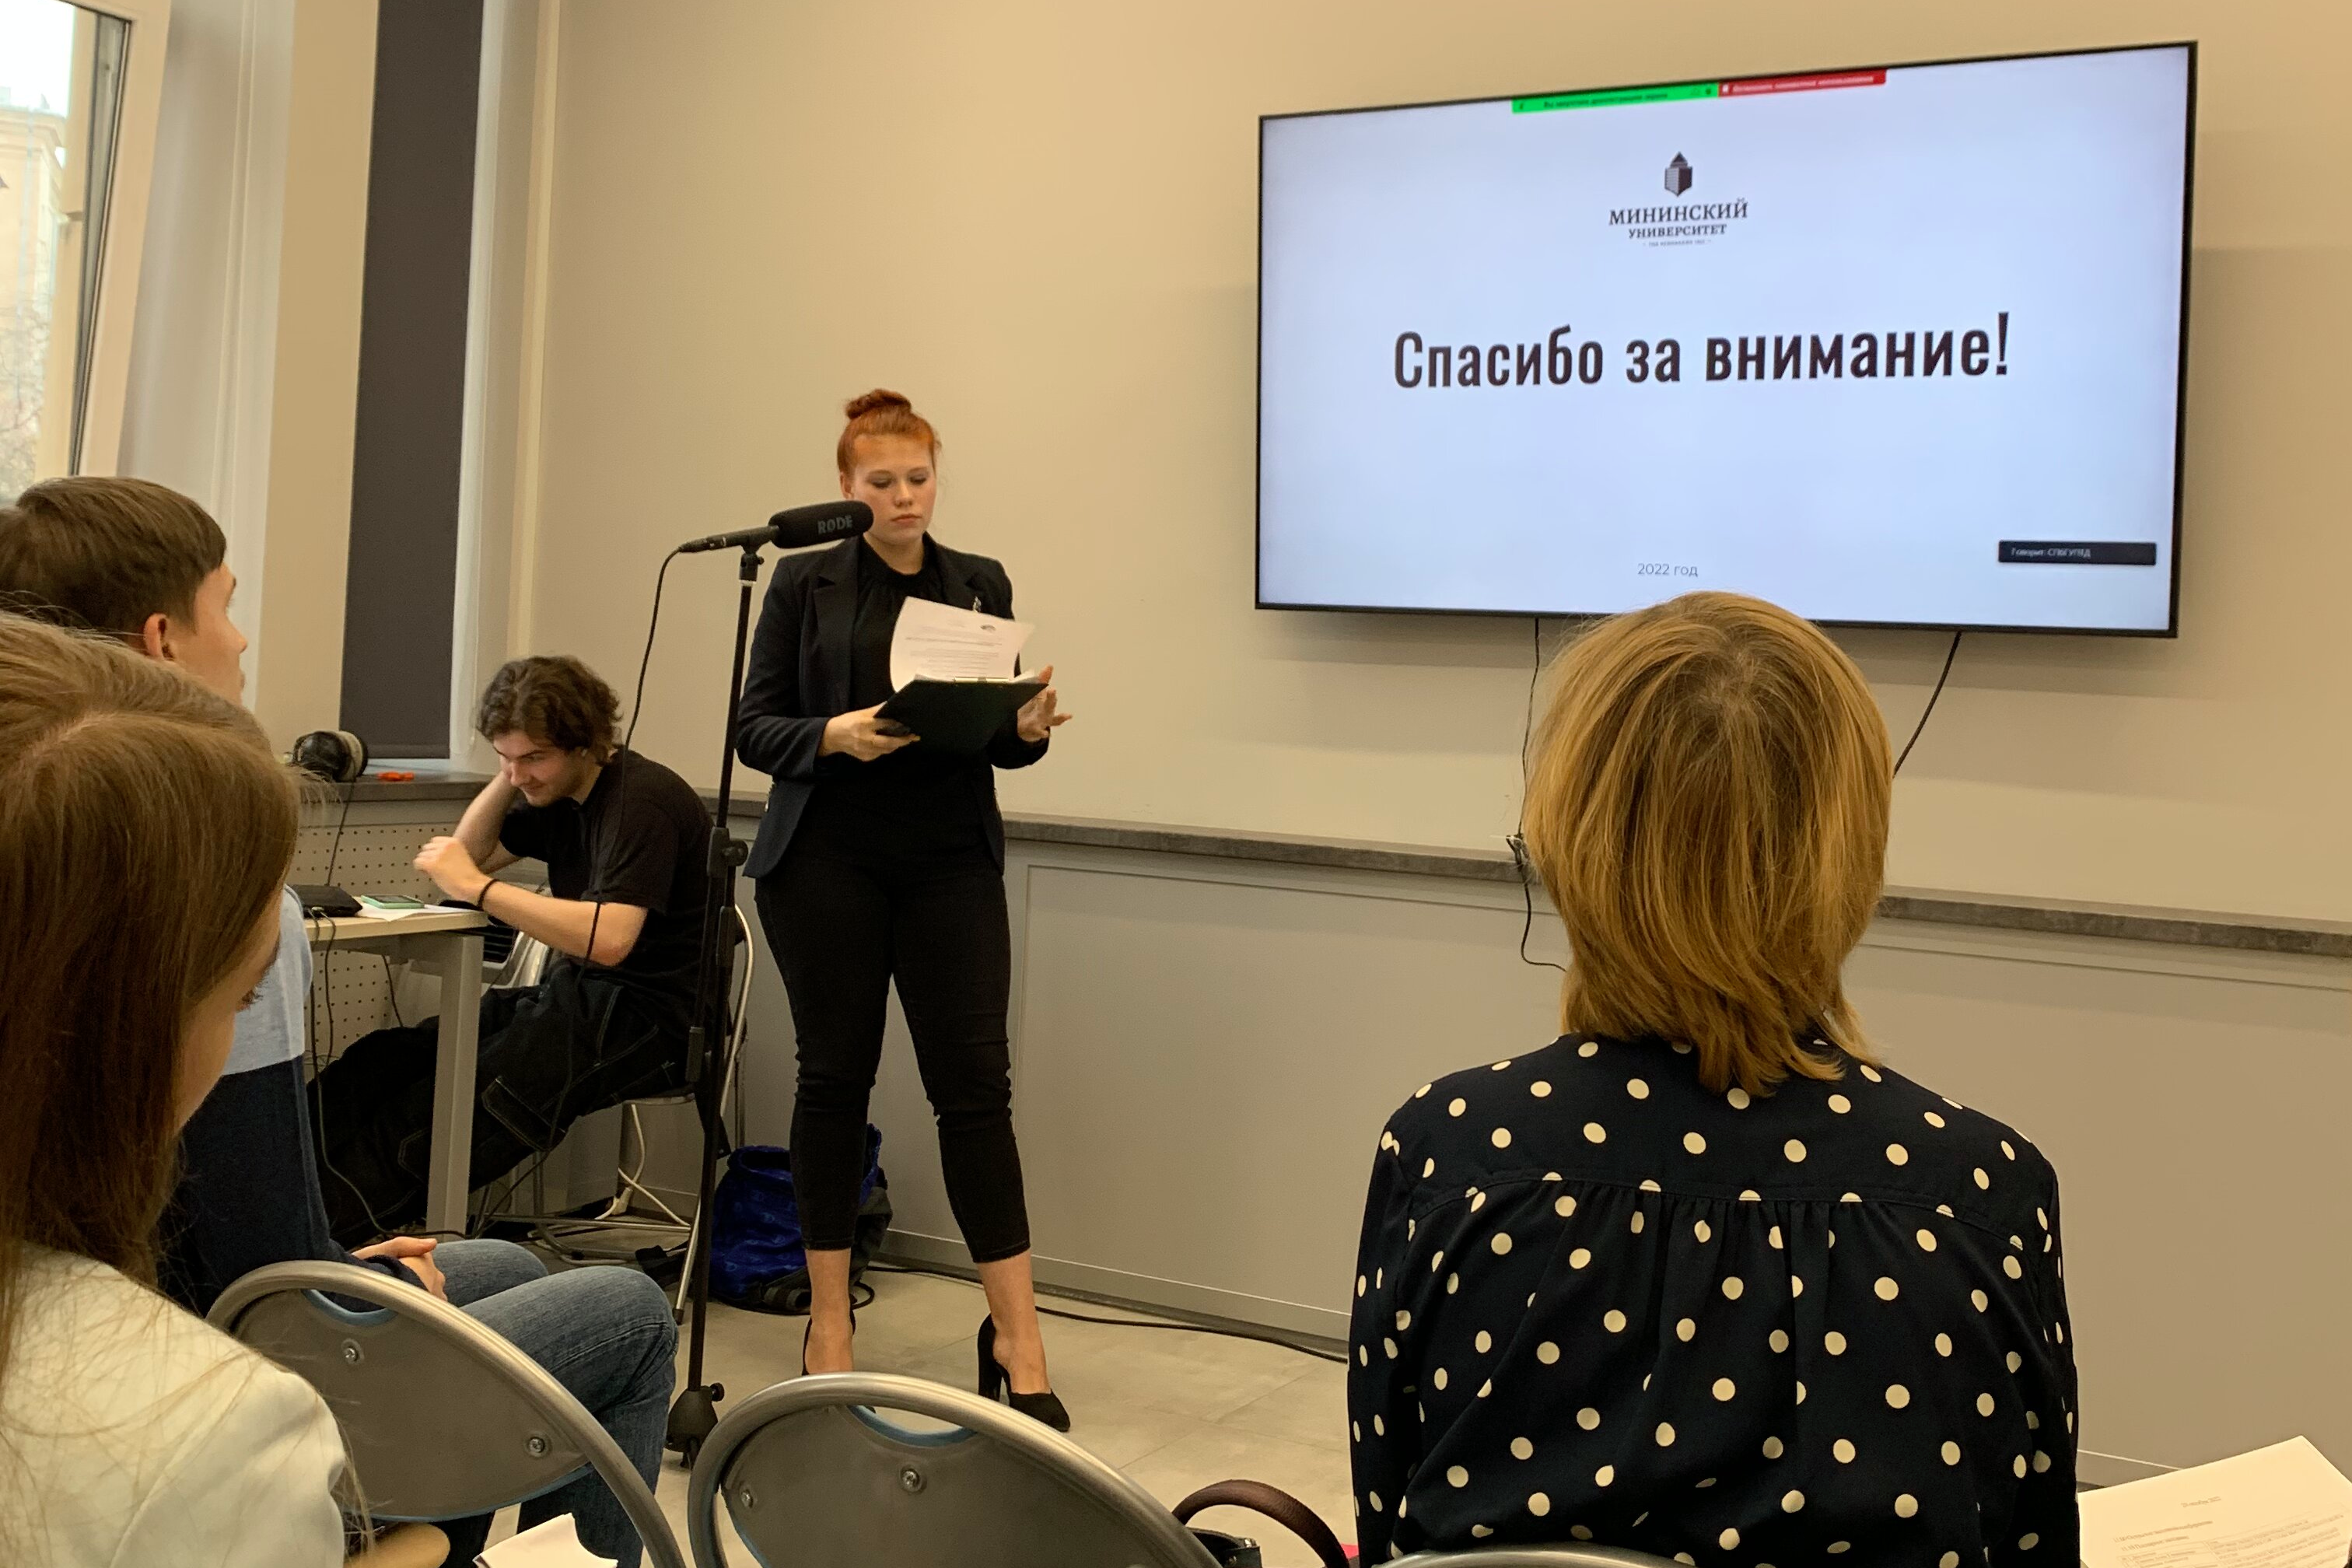 Студентки Мининского университета выступили на конференции по финансовой грамотности в Санкт-Петербурге